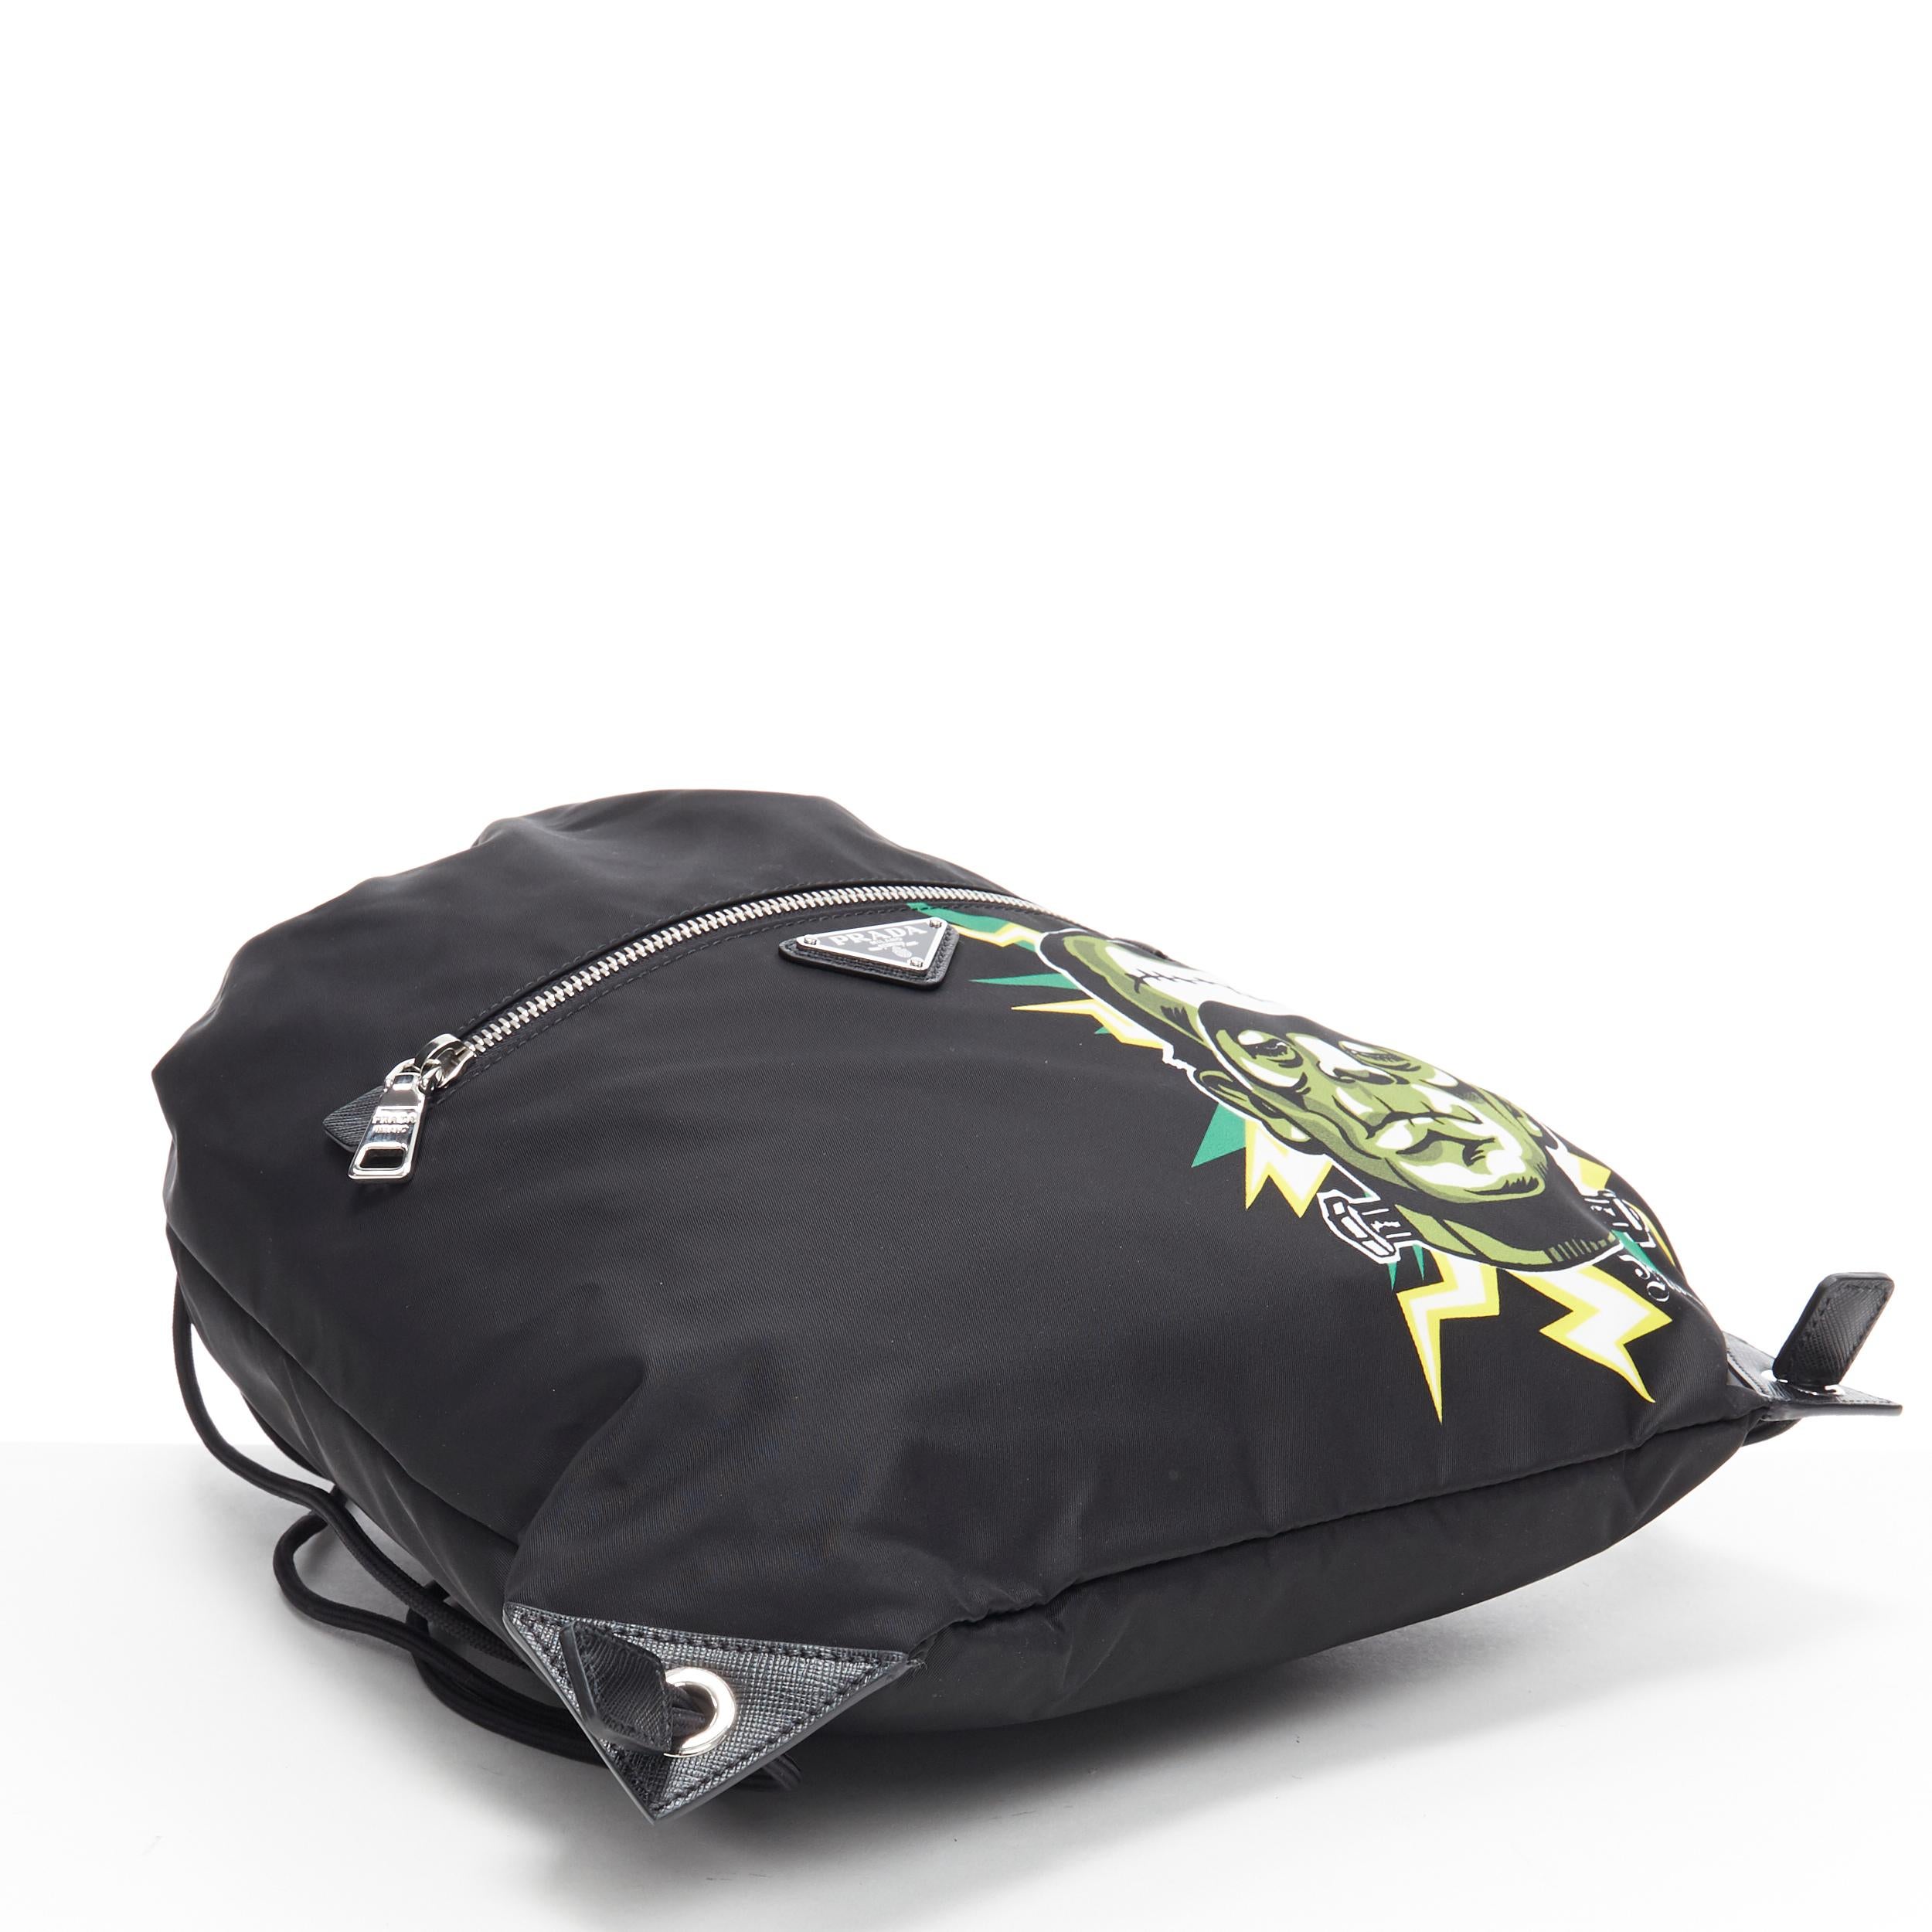 Men's new PRADA 2019 Frankenstein black nylon triangle logo drawstring backpack bag